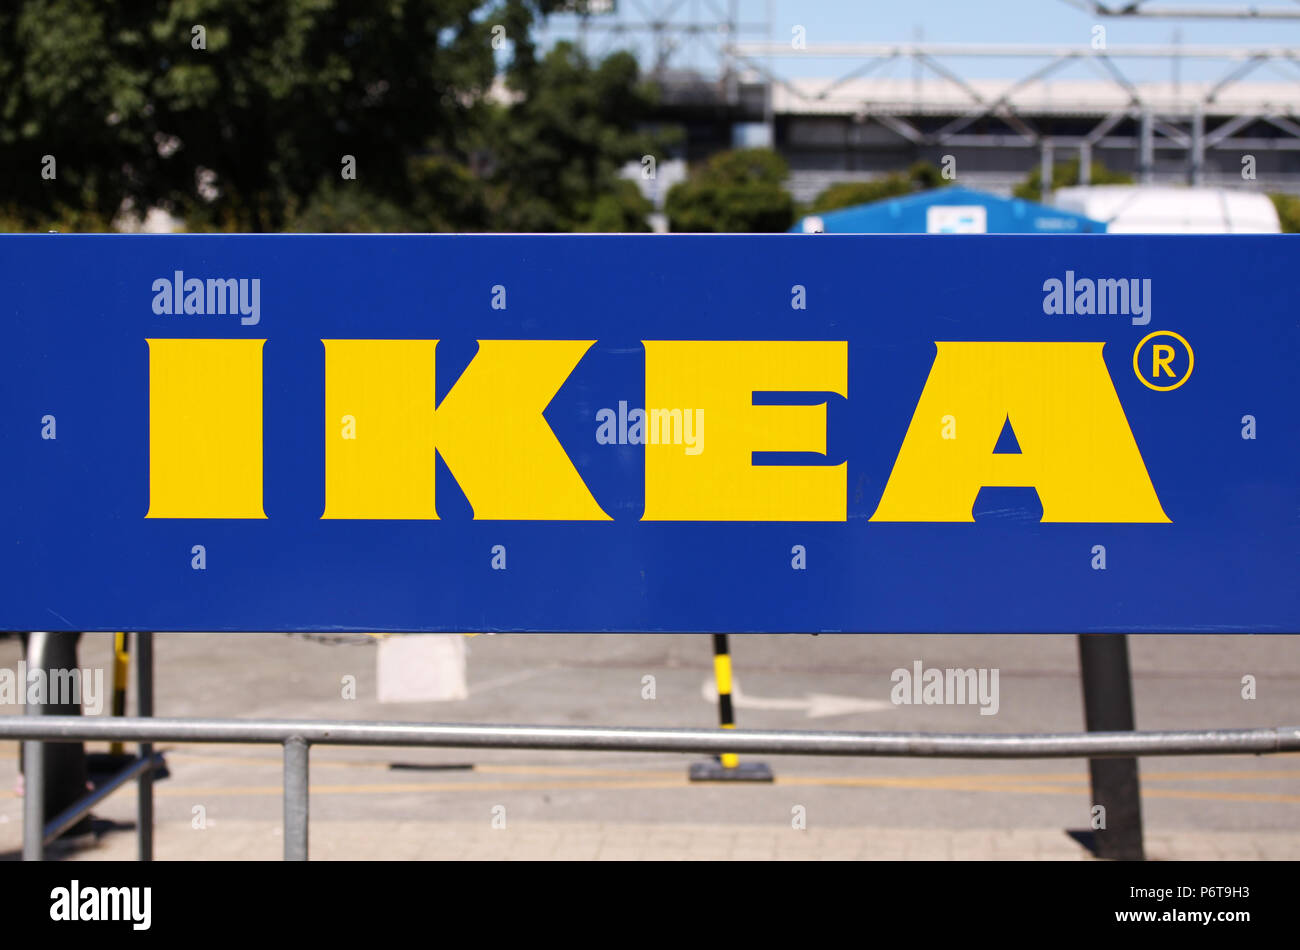 Copenhague, Danemark - 2 juillet 2018 : le logo IKEA sur le marché type IKEA au parking. Ikea est le plus grand détaillant de meubles dans le monde Banque D'Images